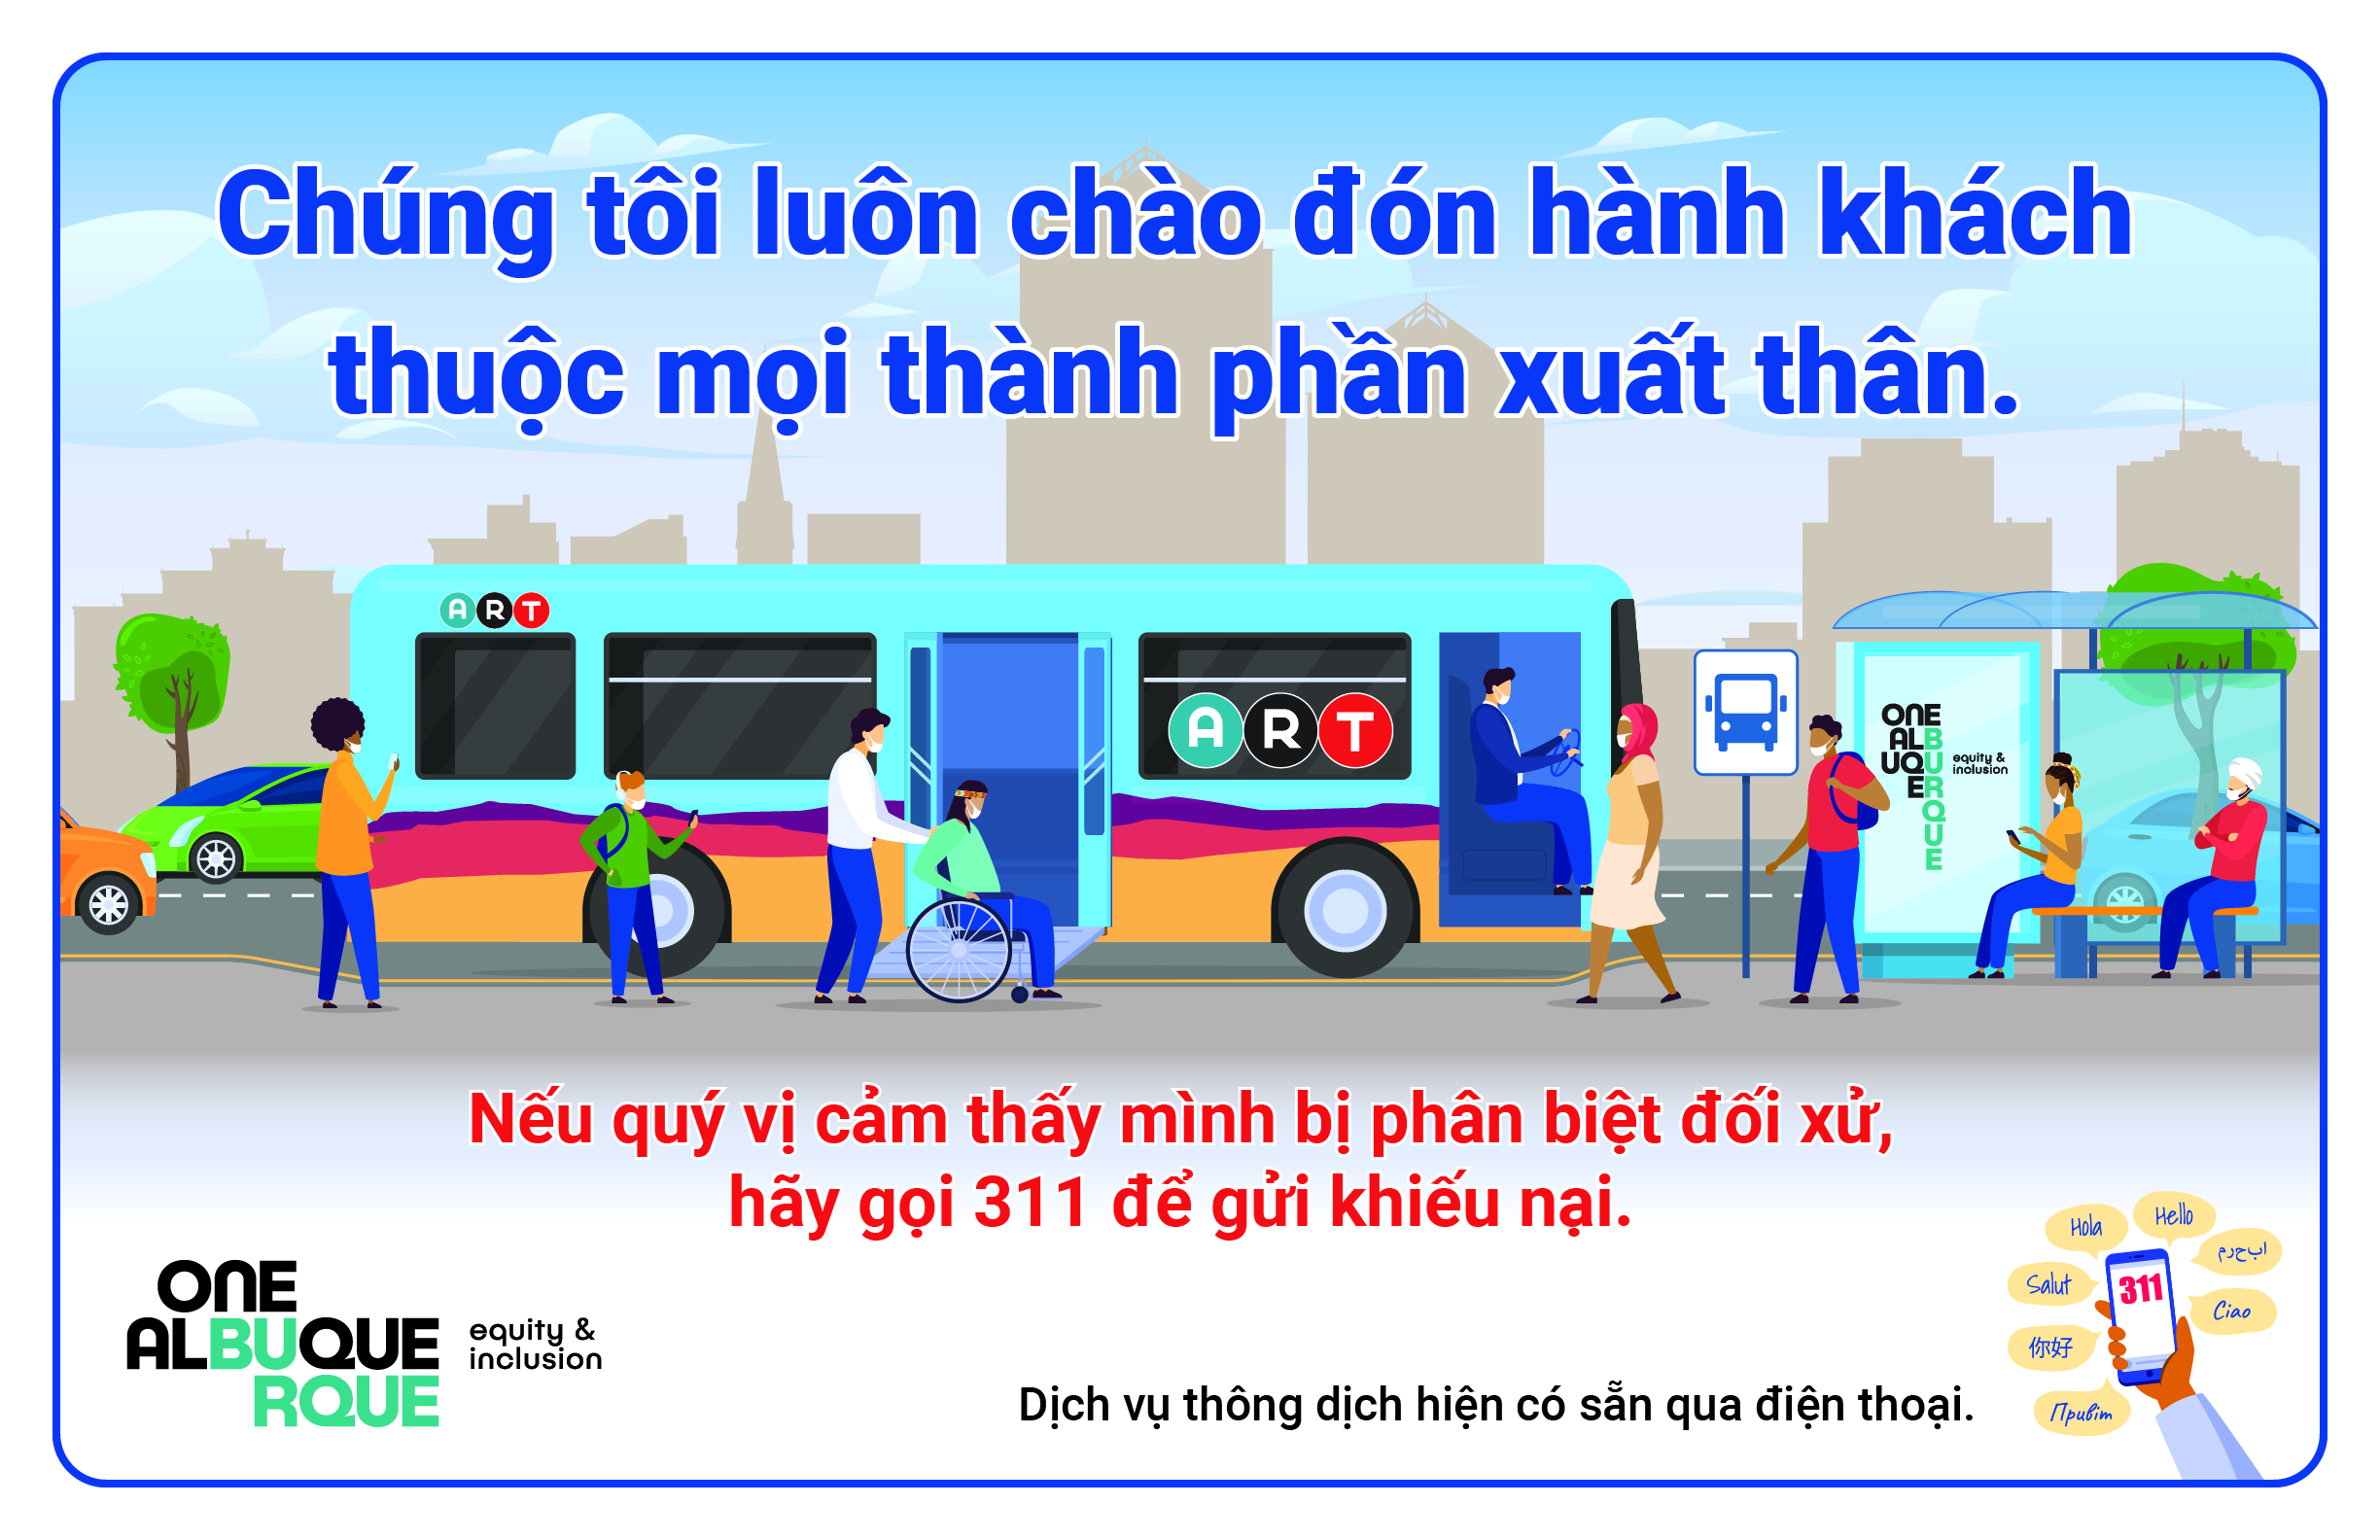 Transit-Poster-Vietnamese_large.jpg